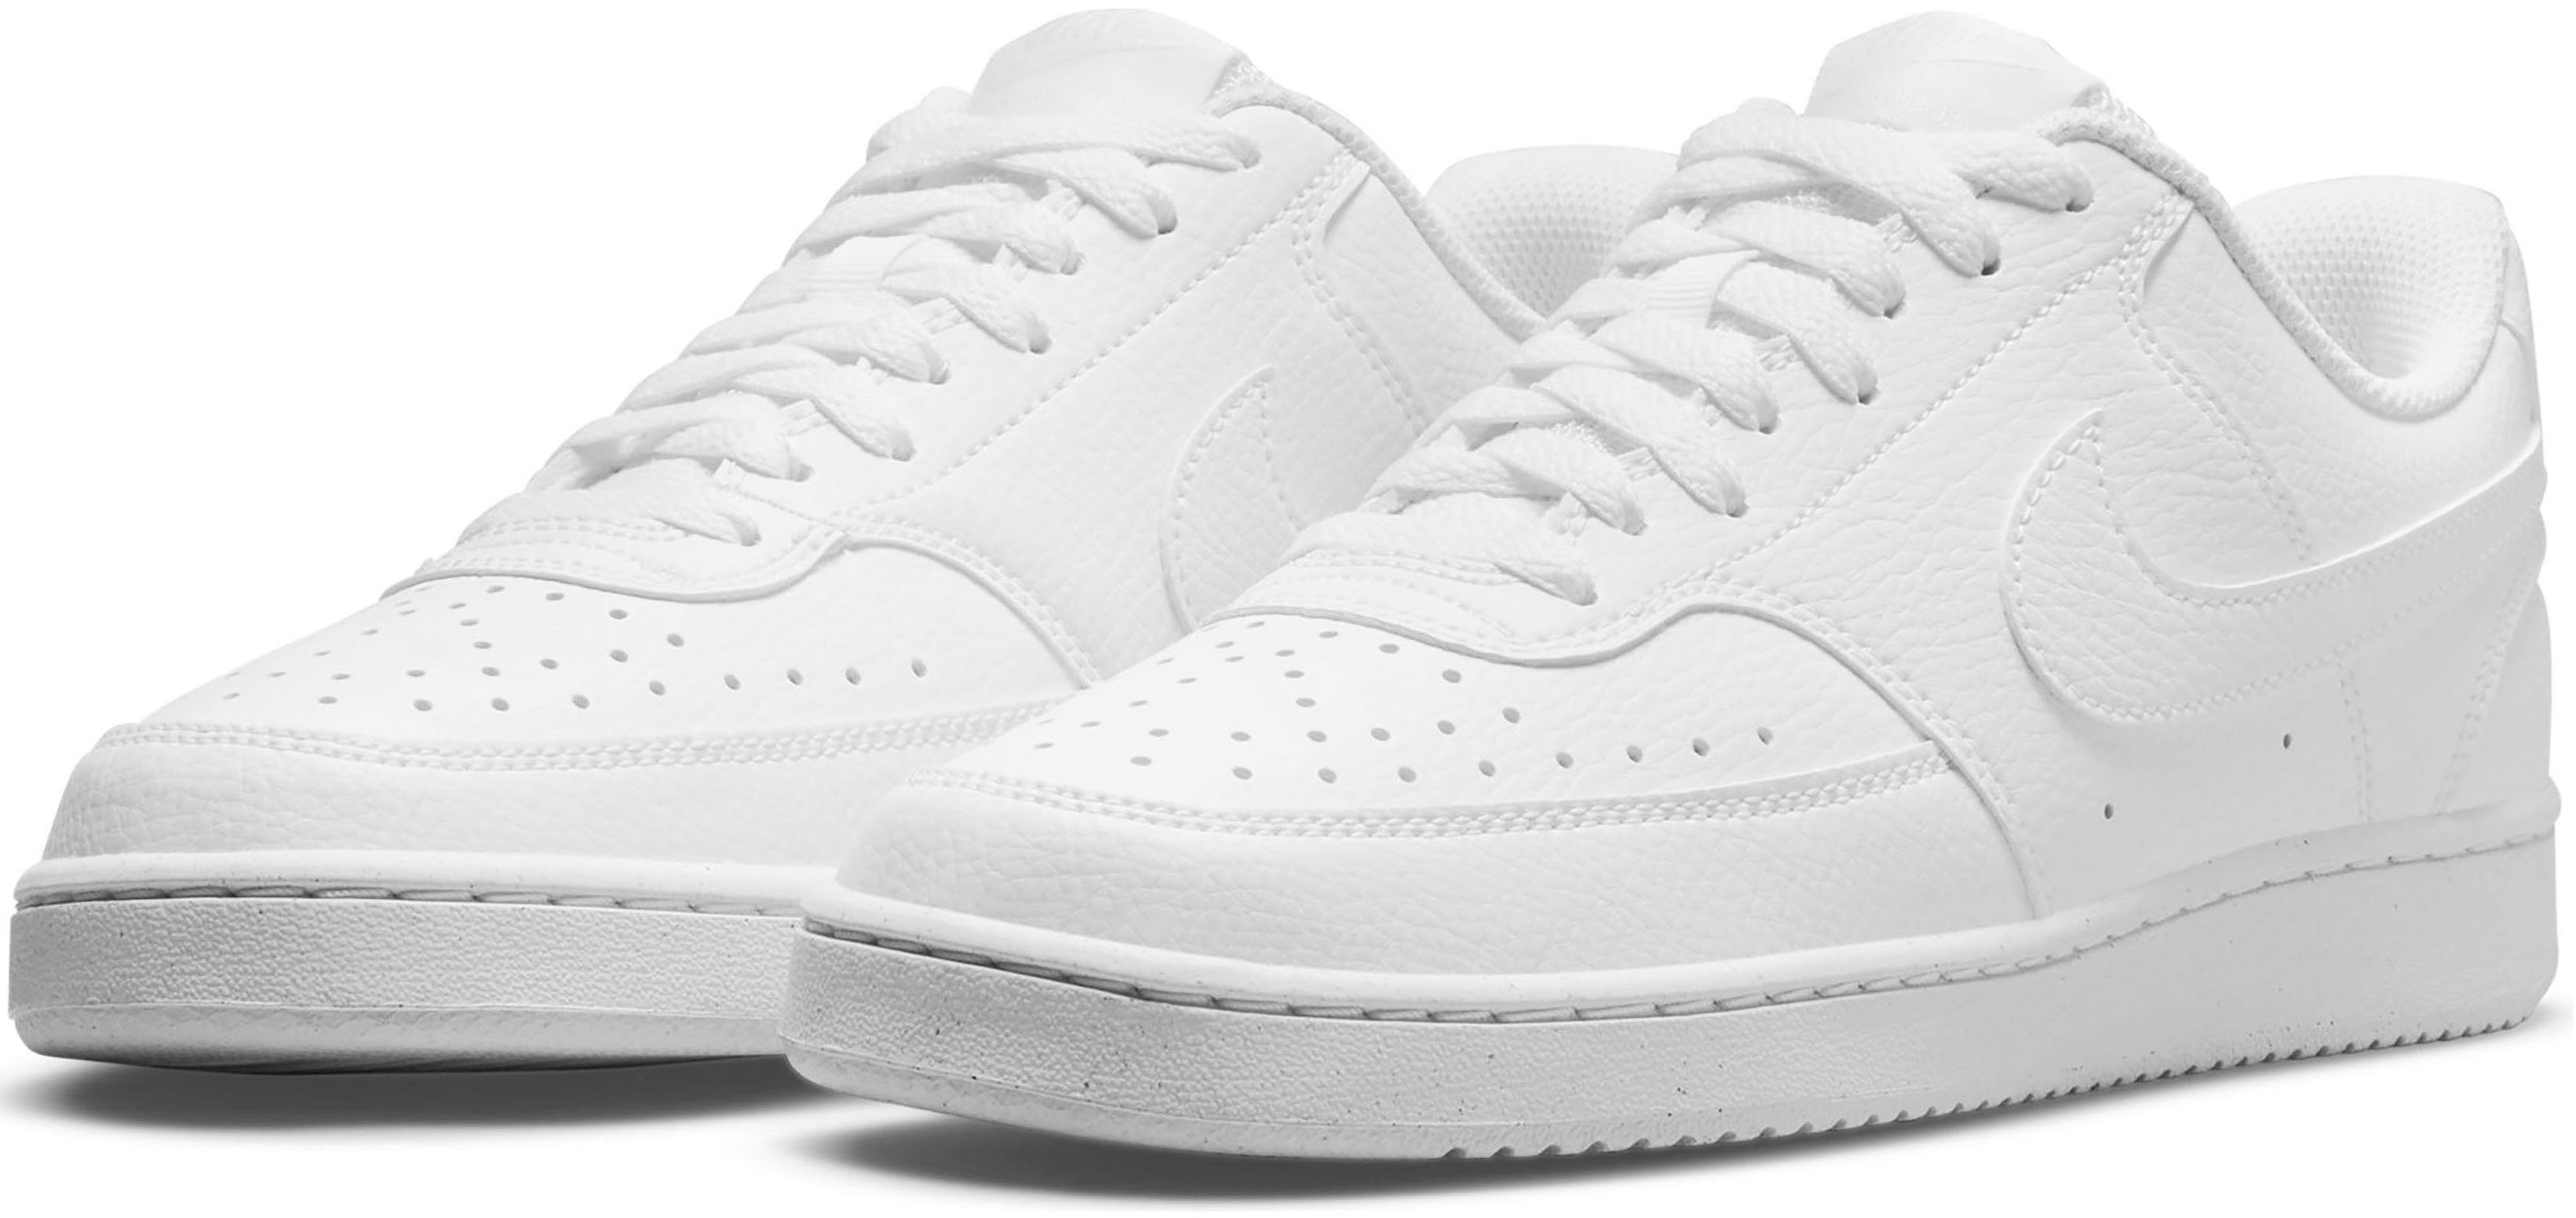 Weiße Nike Air Max Damen Schuhe online kaufen | OTTO